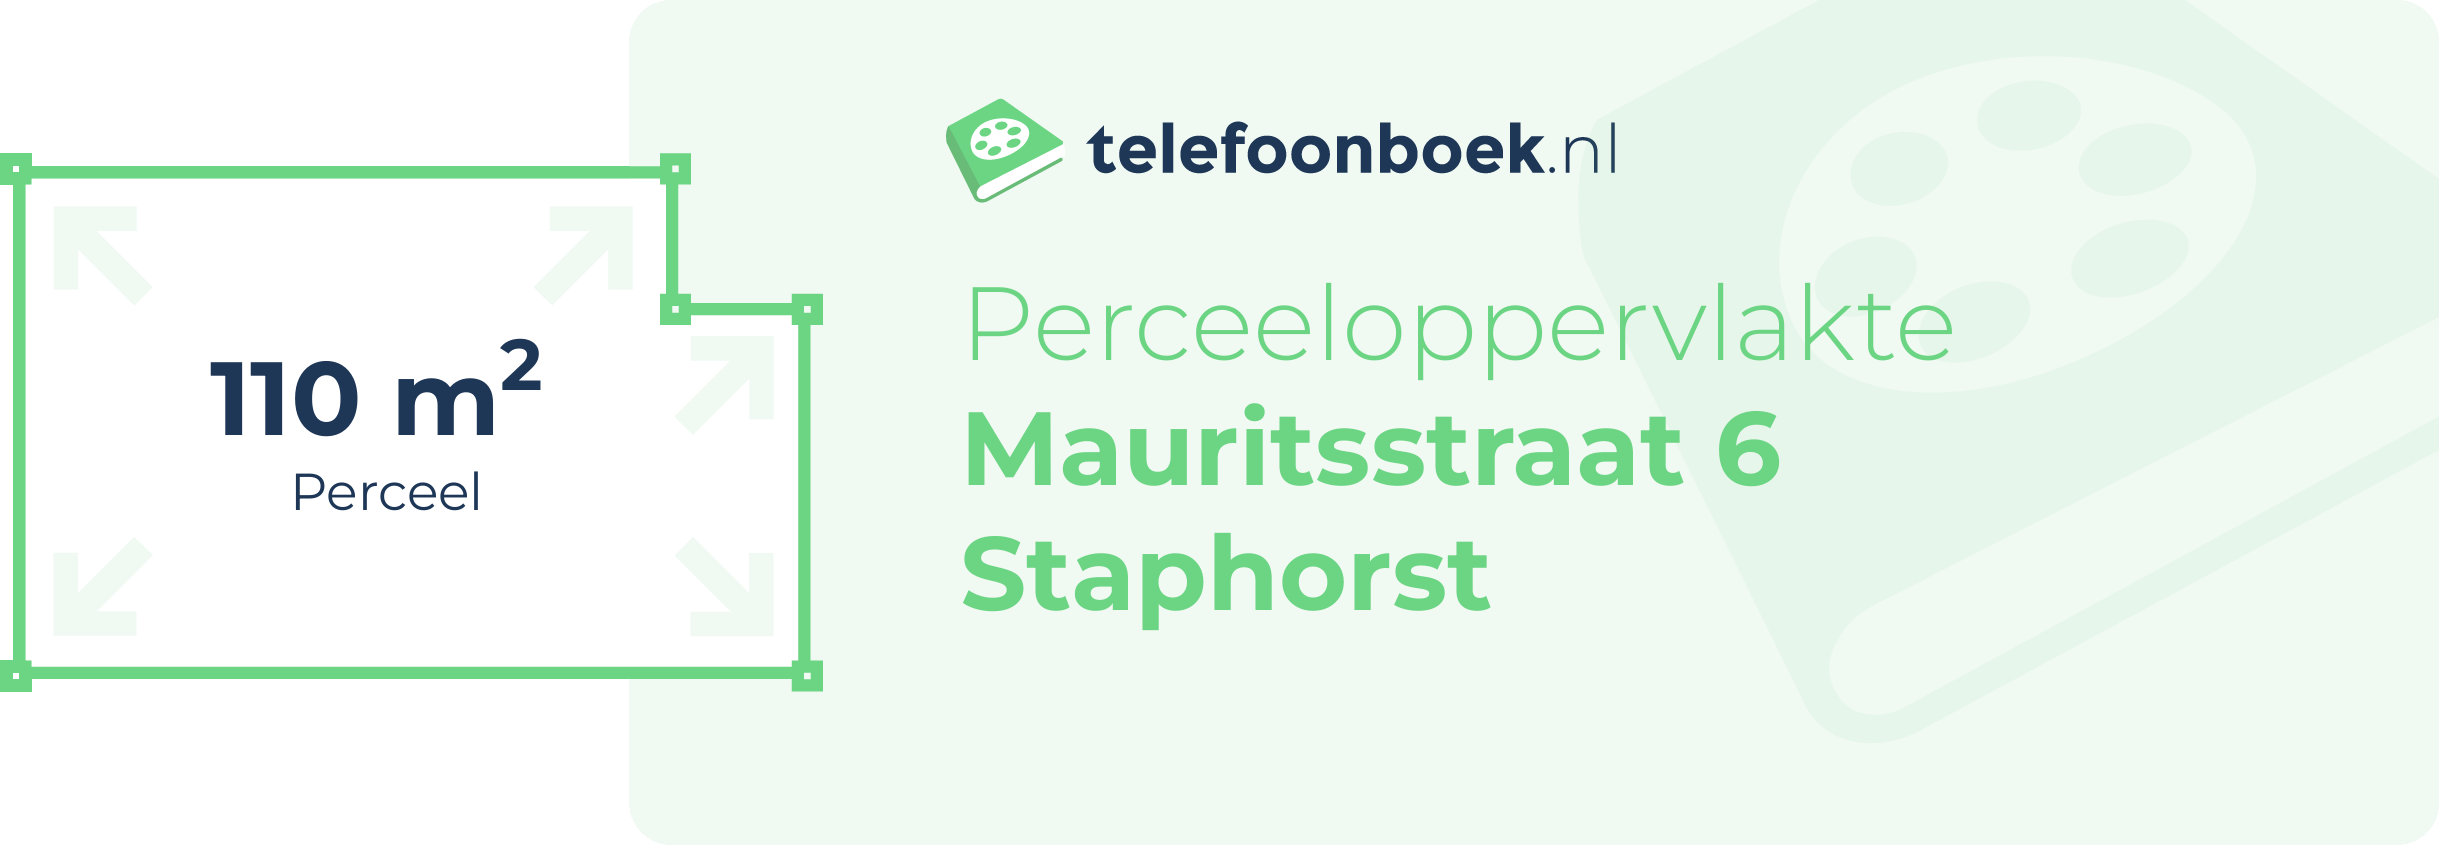 Perceeloppervlakte Mauritsstraat 6 Staphorst